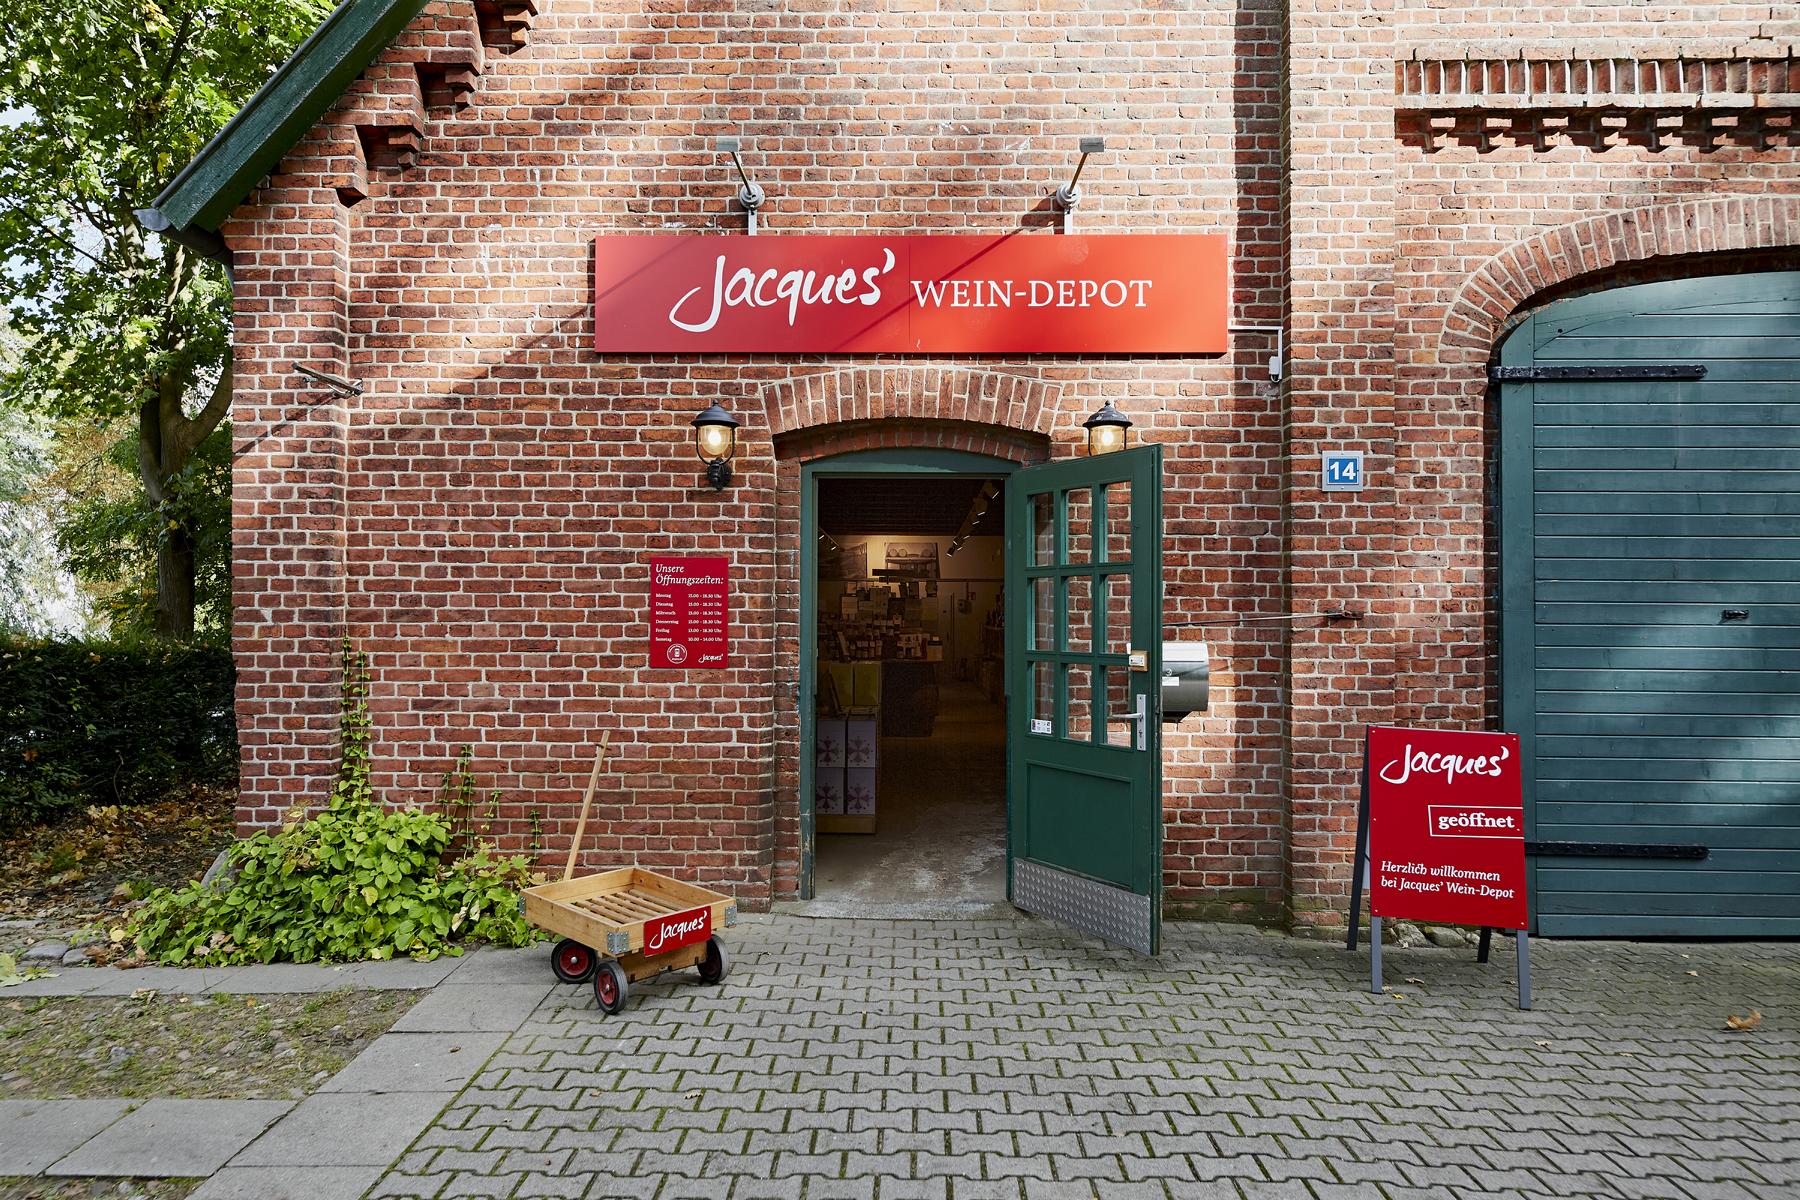 Bilder Jacques’ Wein-Depot Lüneburg